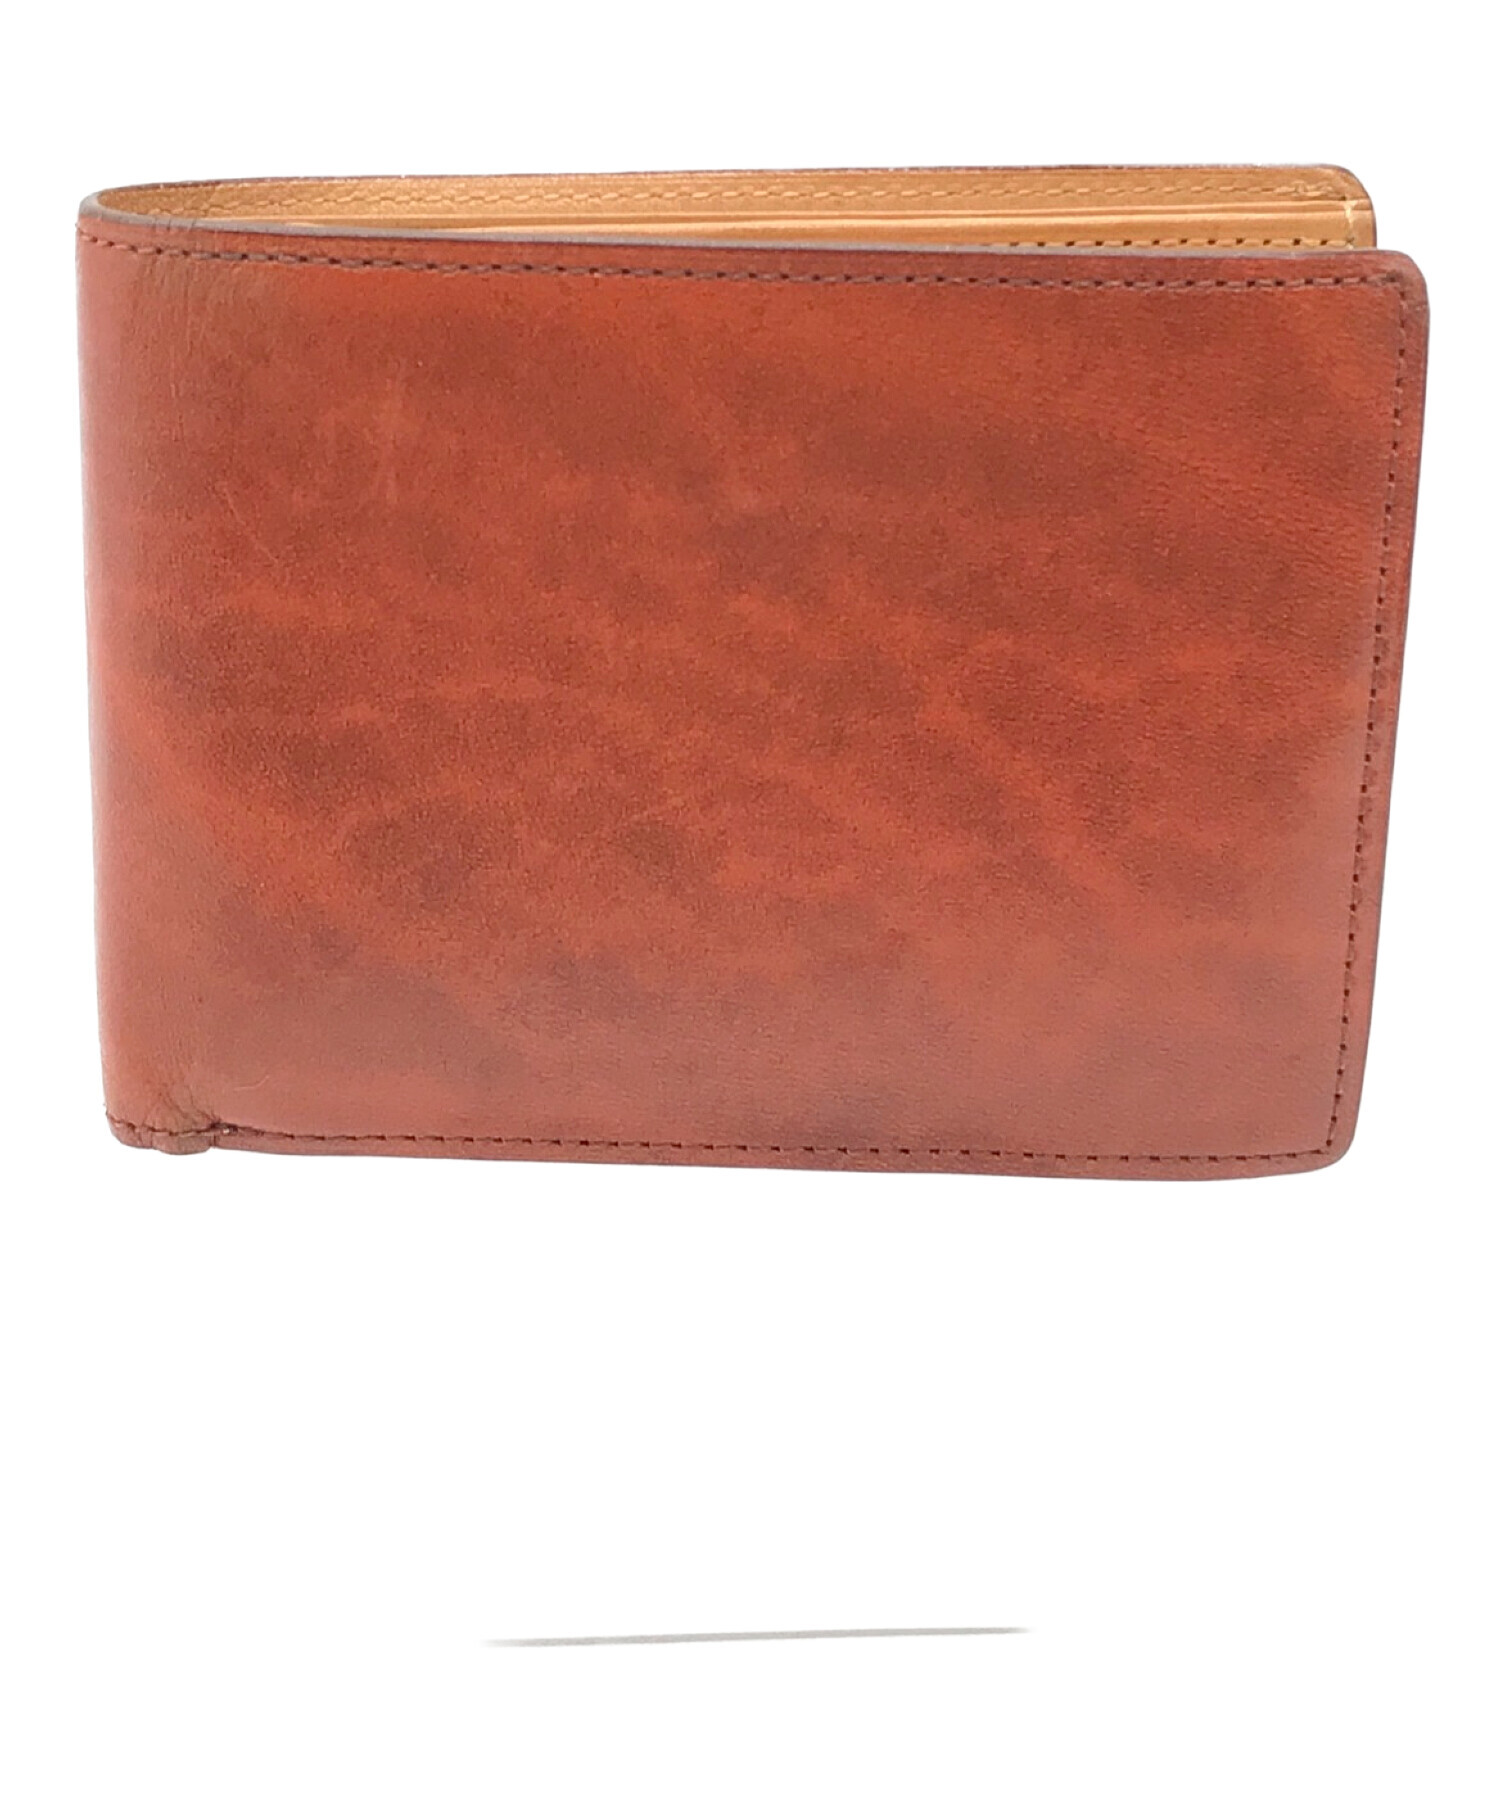 CYPRIS (キプリス) 2つ折り財布 ブラウン サイズ:実寸サイズにてご確認ください。